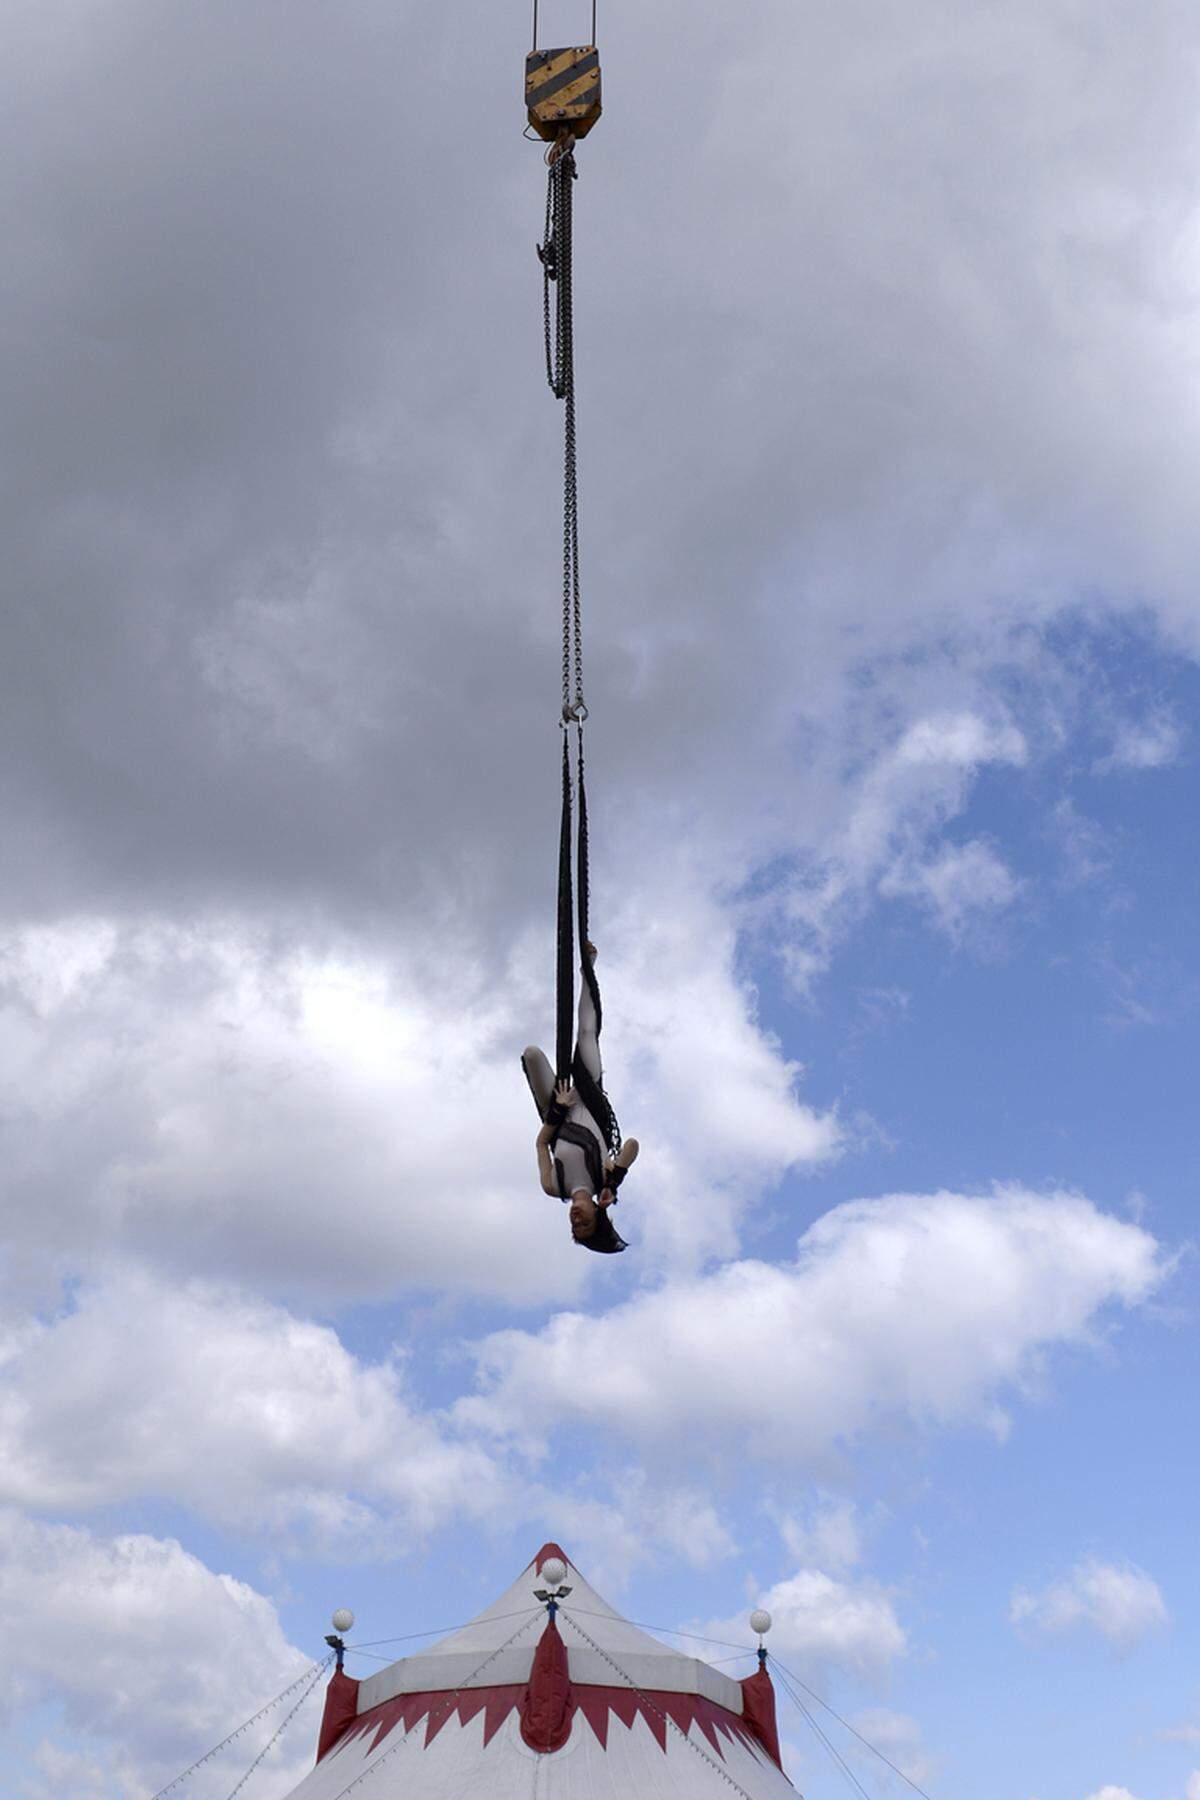 Um ihr Können zu demonstrieren, ließ sich Trapez-Künstlerin Andrea Navratilova von einem 20 Meter hohen Baukran abseilen.